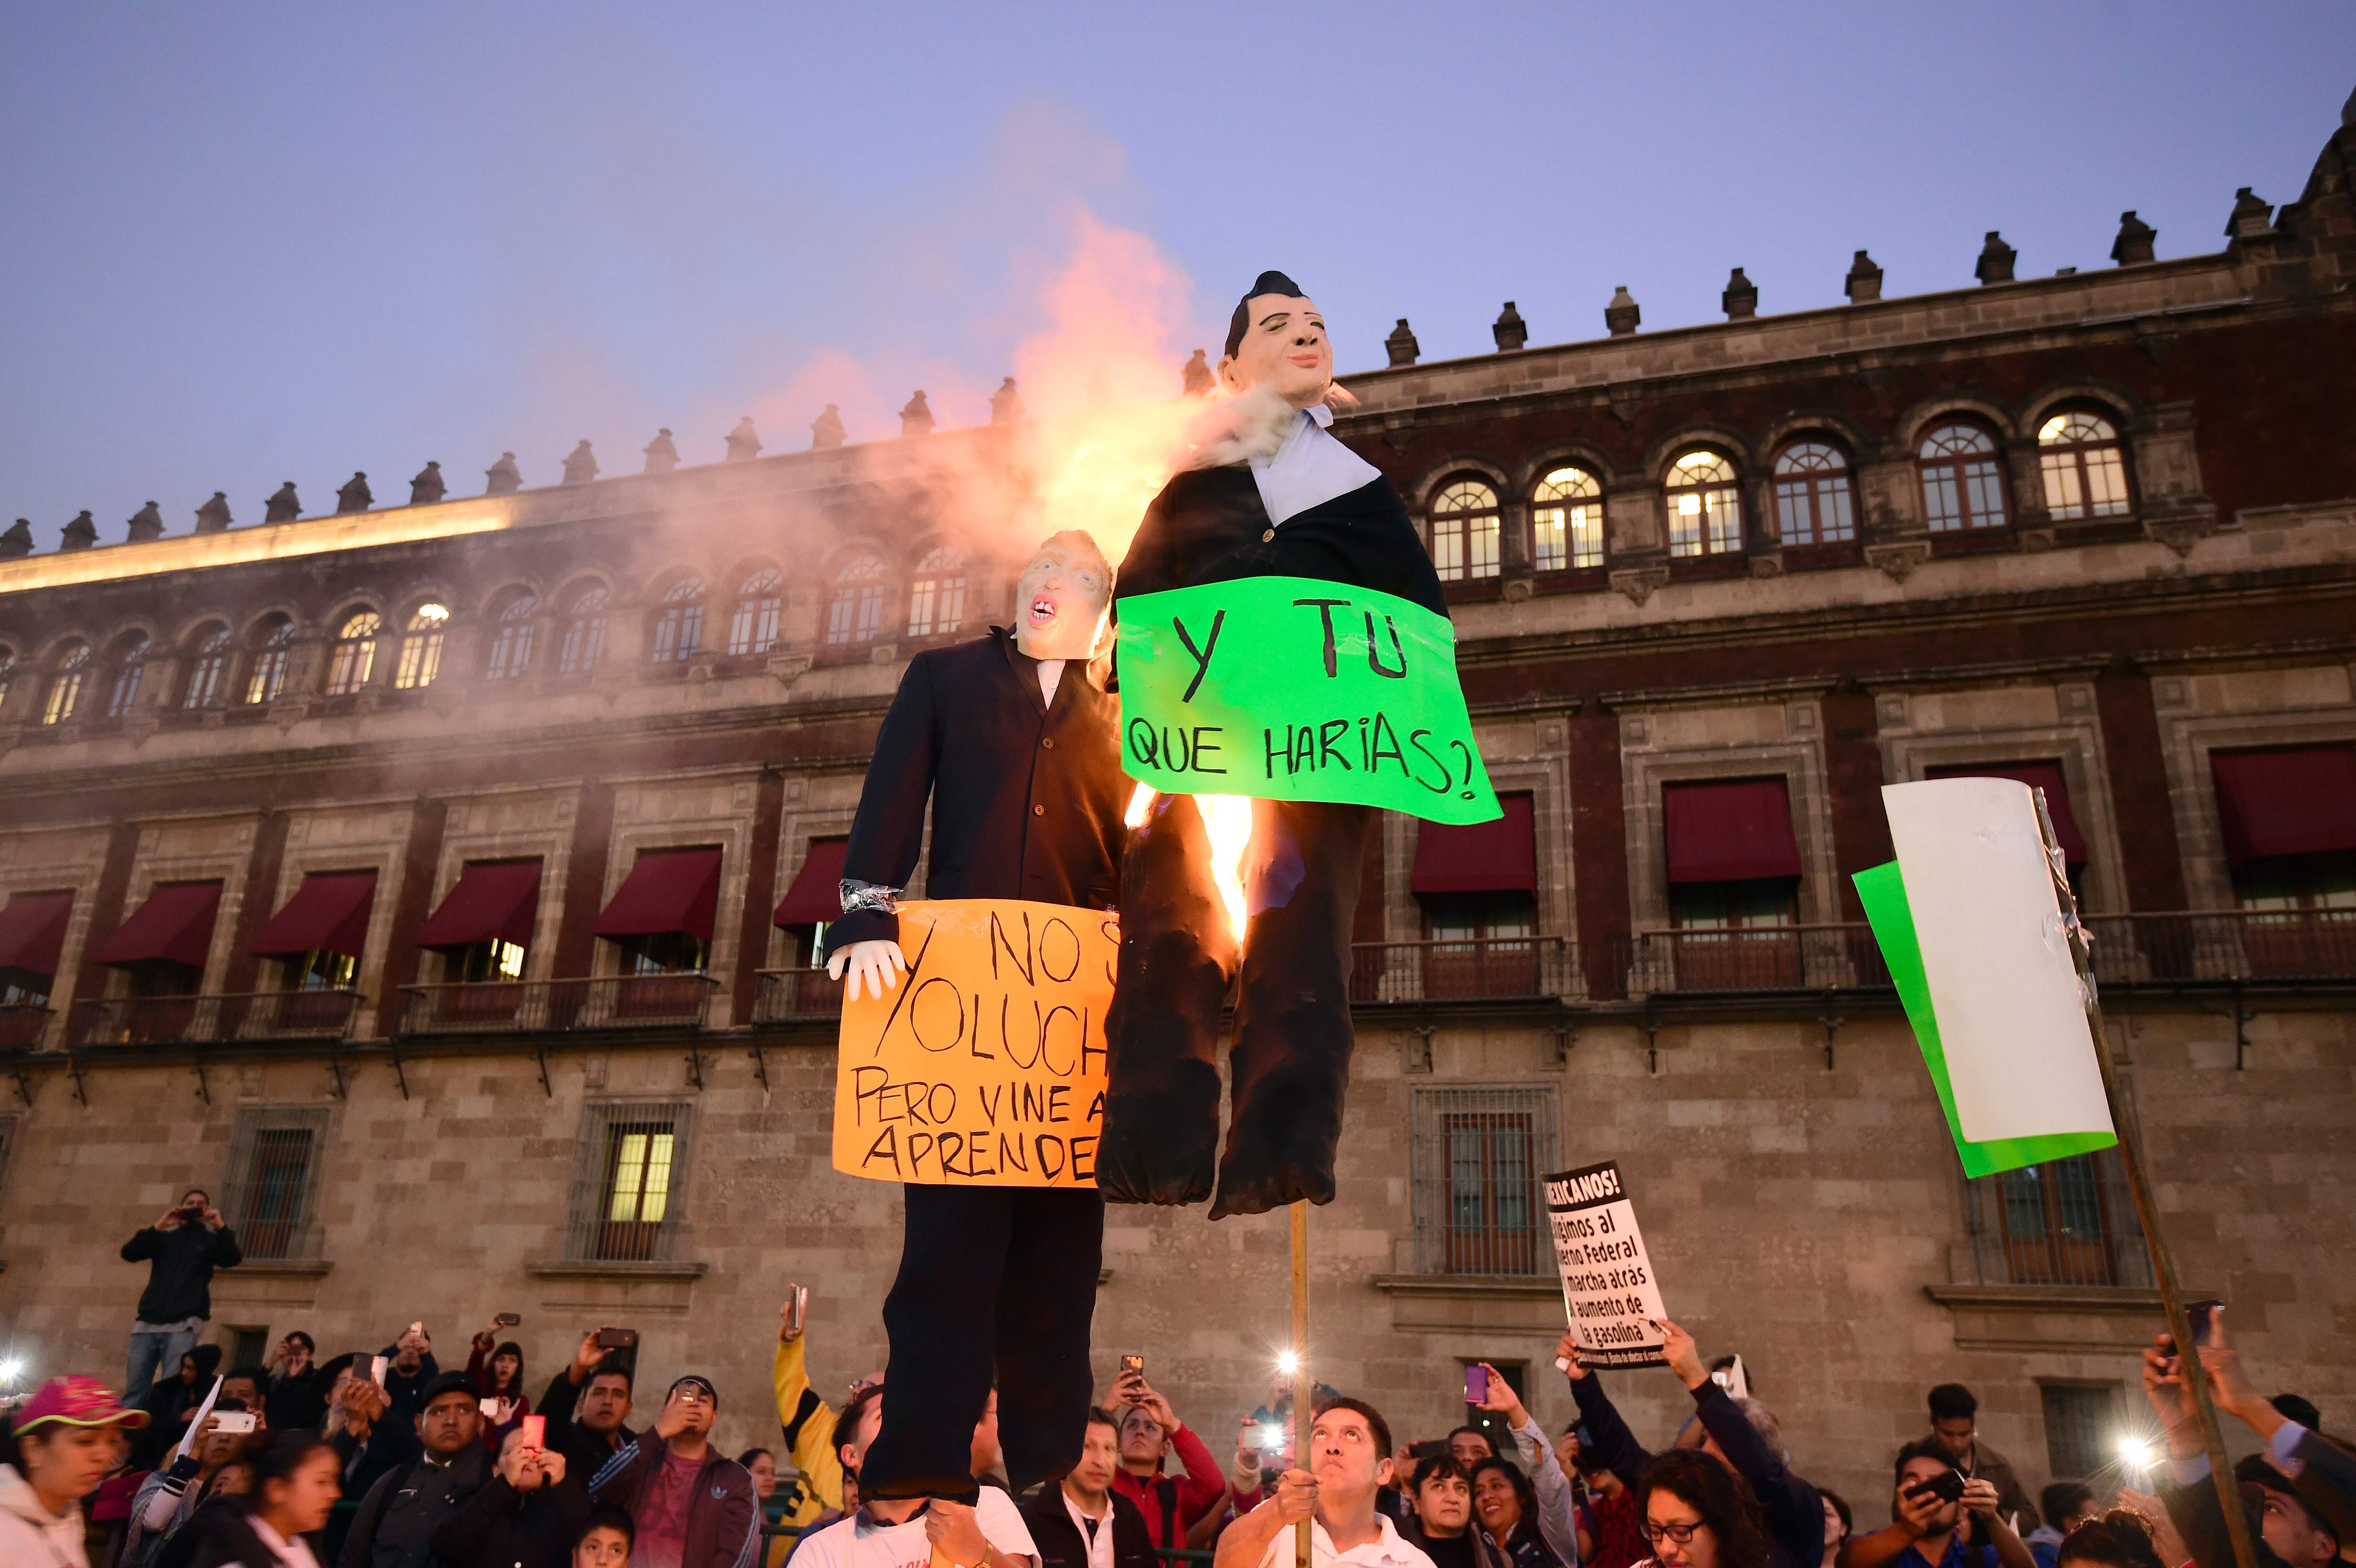 متظاهرون مكسيكييون يحرقون دمية الرئيس الأمريكى المنتخب دونالد ترامب والرئيس المكسيكى إنريكه بينيا نييتو